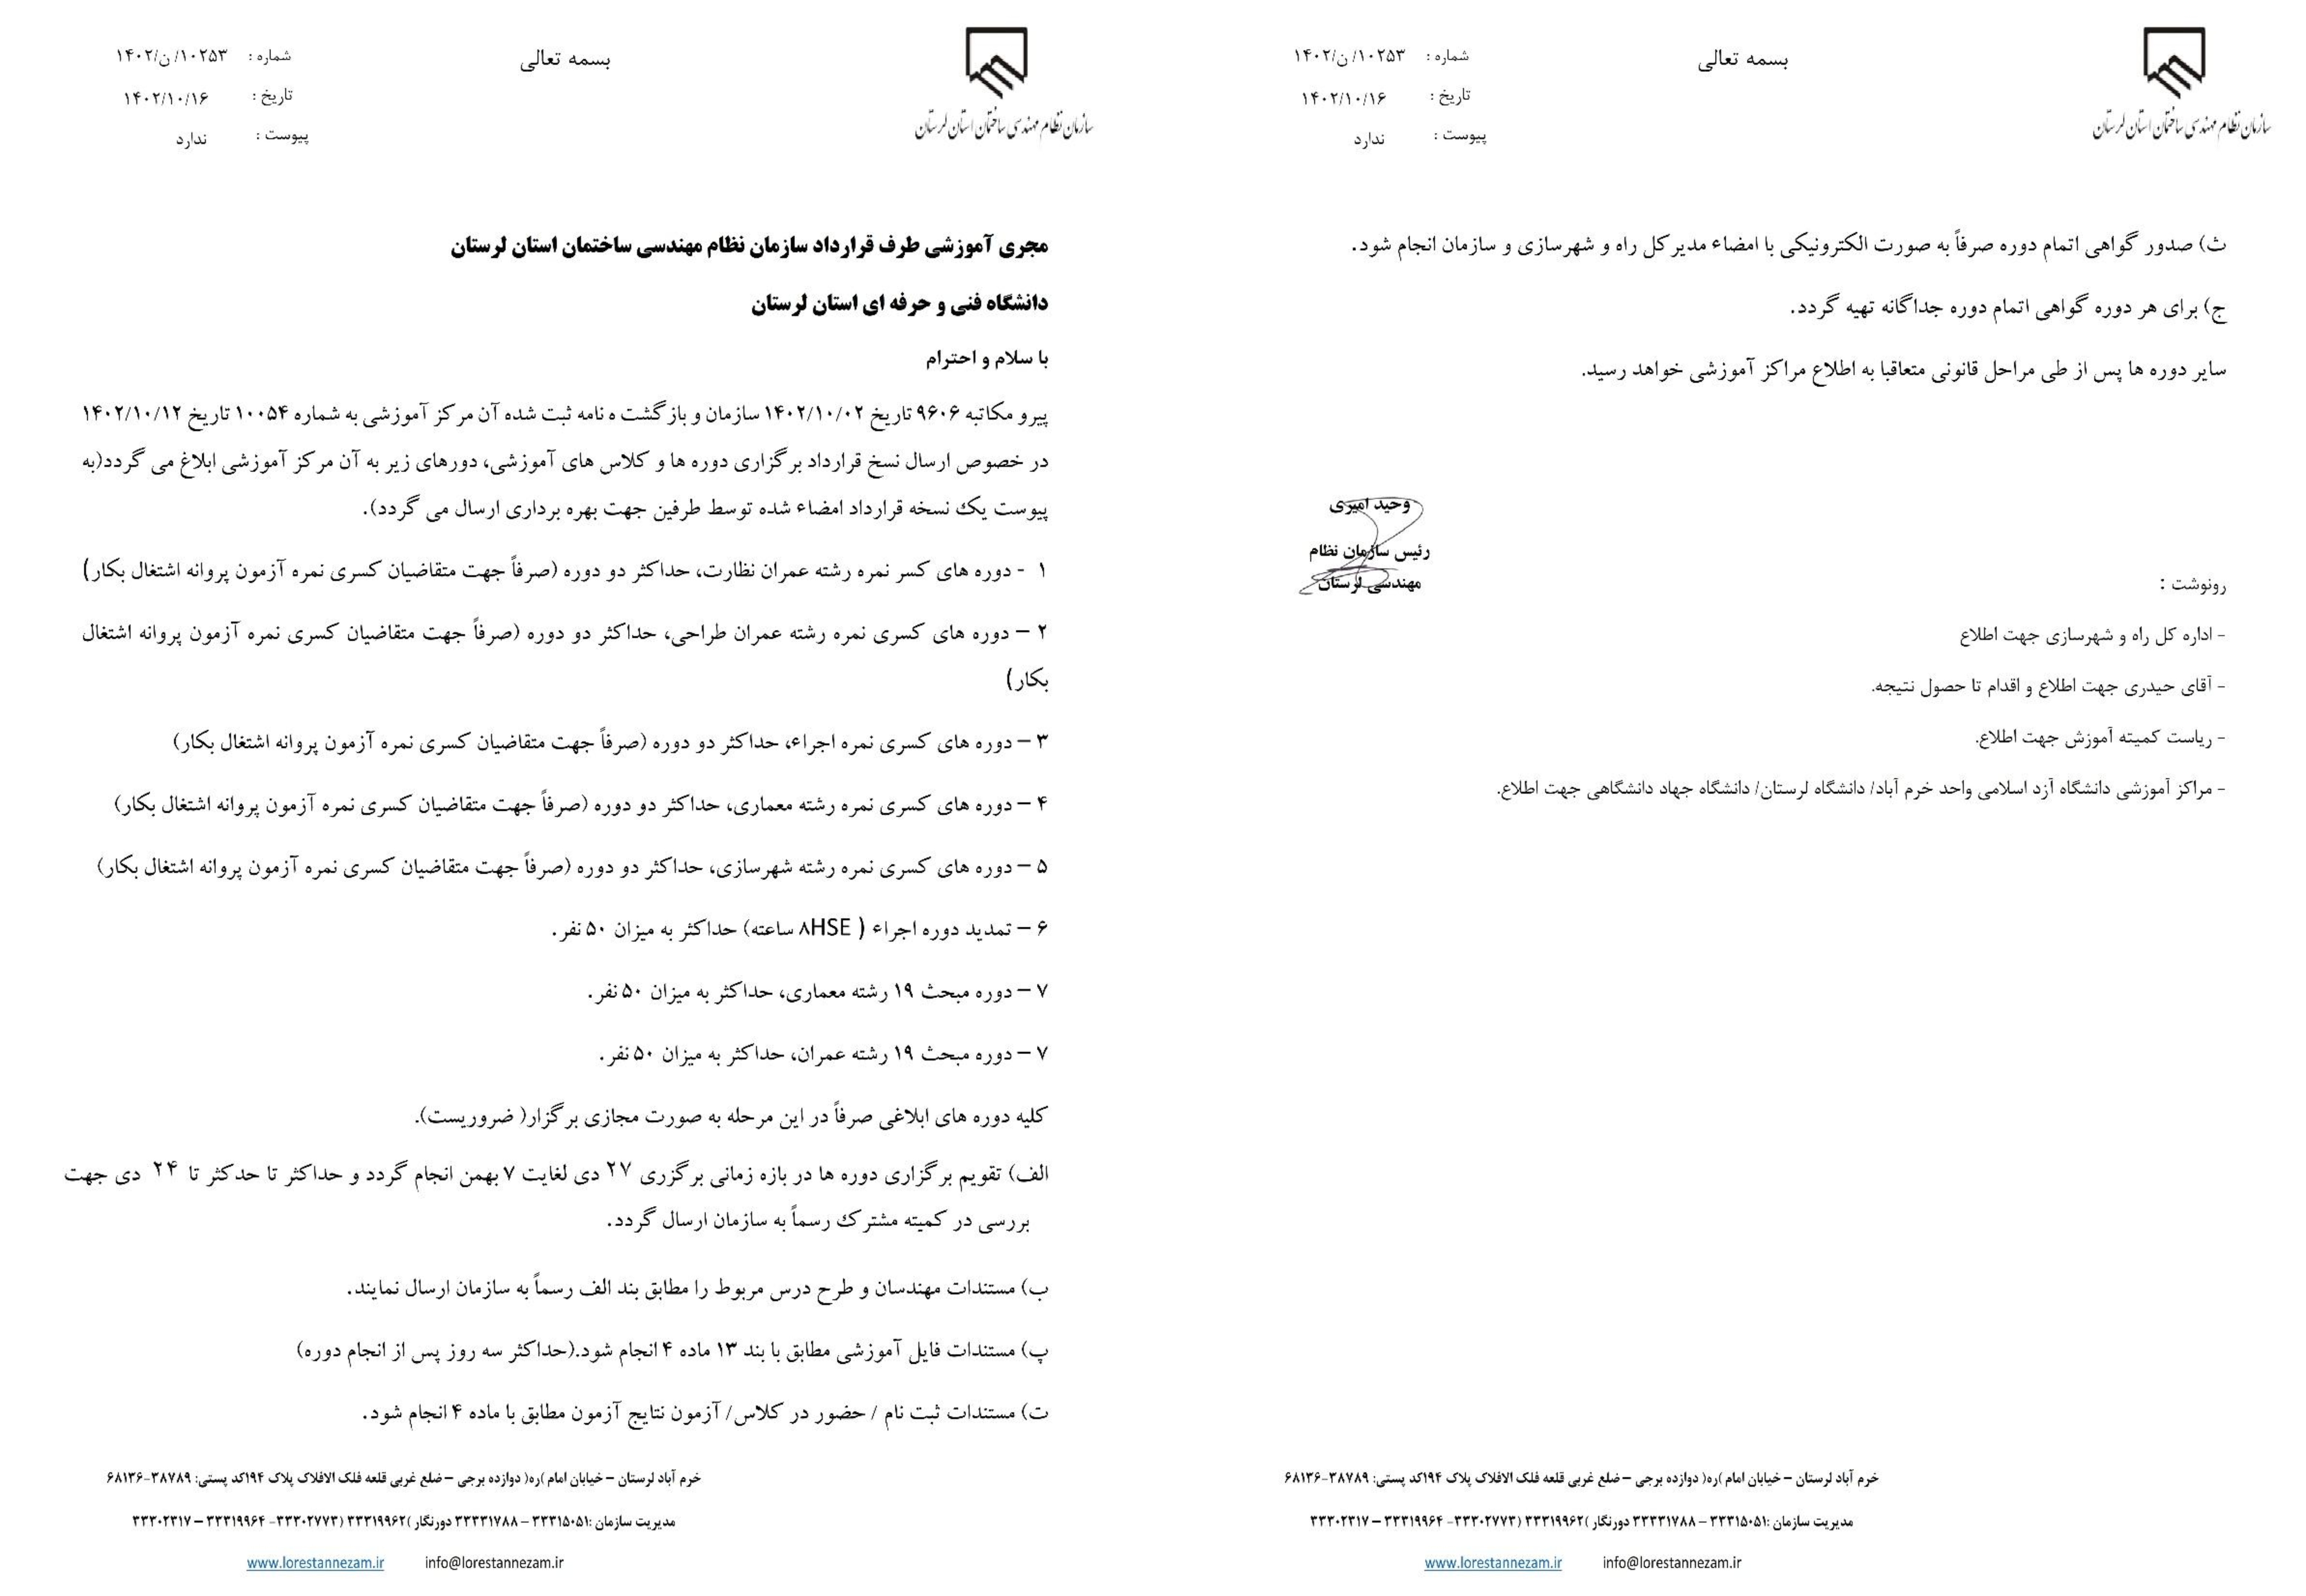 مکاتبه رسمی سازمان استان جهت اعلام دوره های آموزشی به دانشگاه فنی و حرفه ای